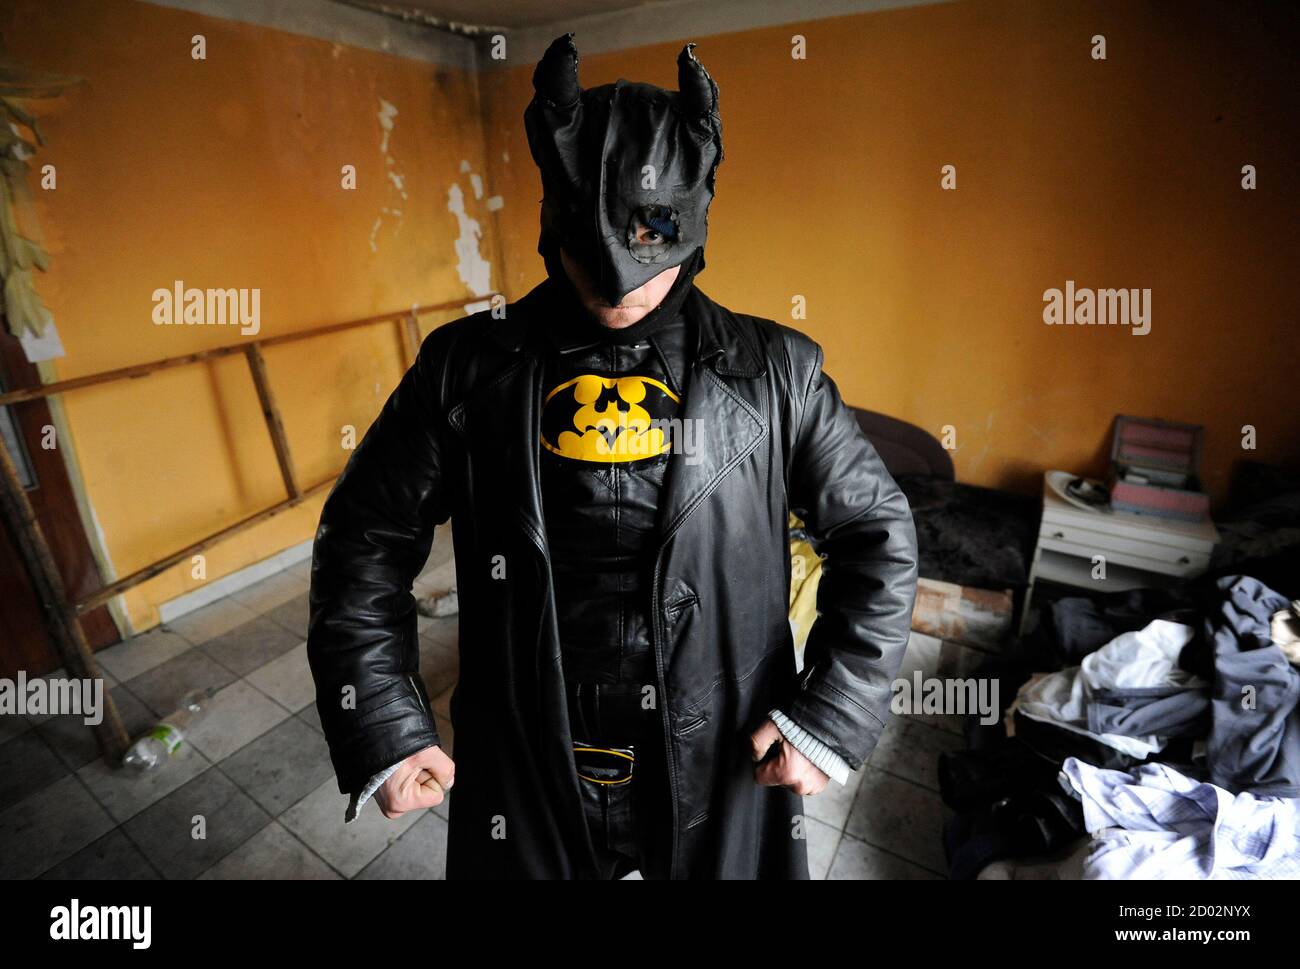 Zoltan Kohari, conocido como el batman eslovaco, se encuentra en su casa en  la ciudad de Dunajska Streda, a unos 34 km (55 millas) al sur de Bratislava  8 de marzo de